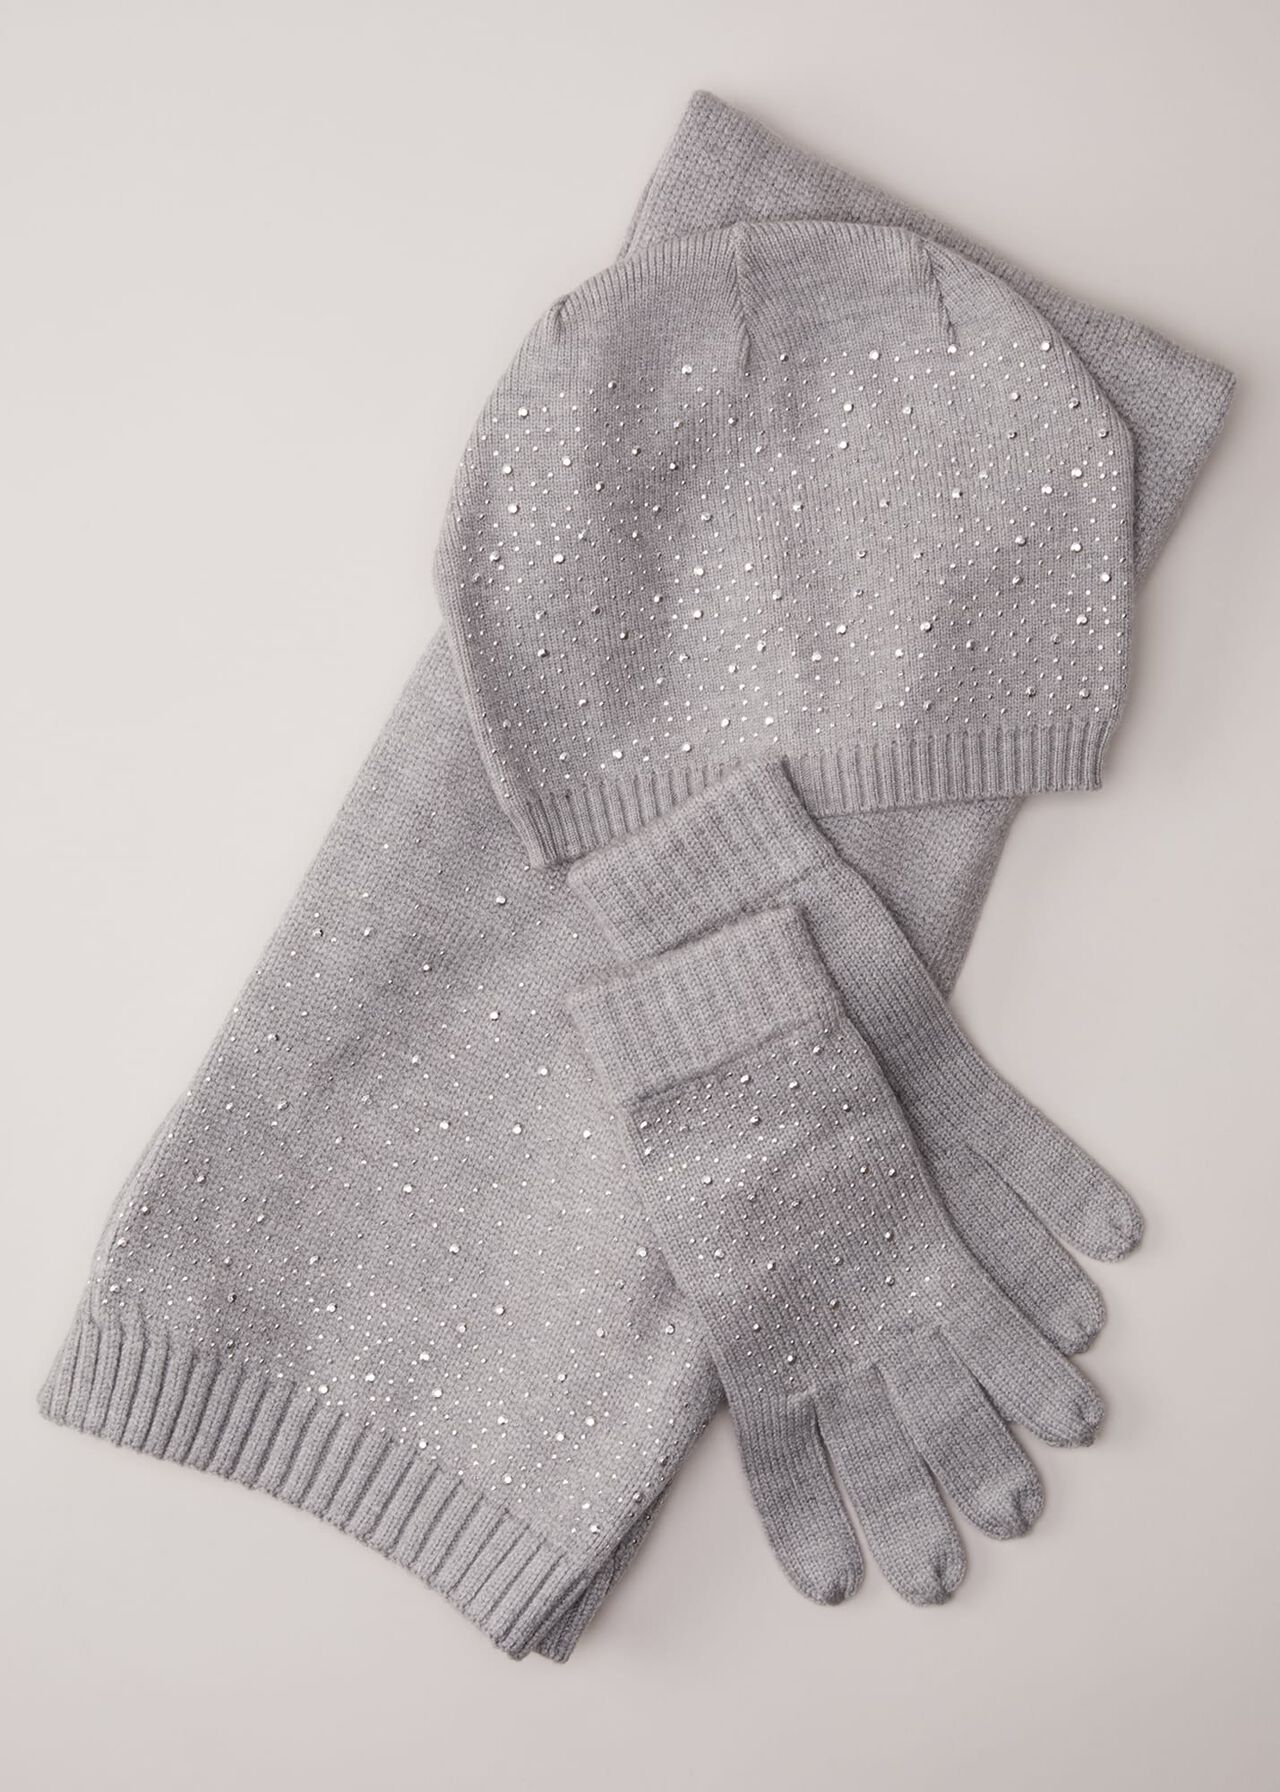 Grey Sparkly Gloves